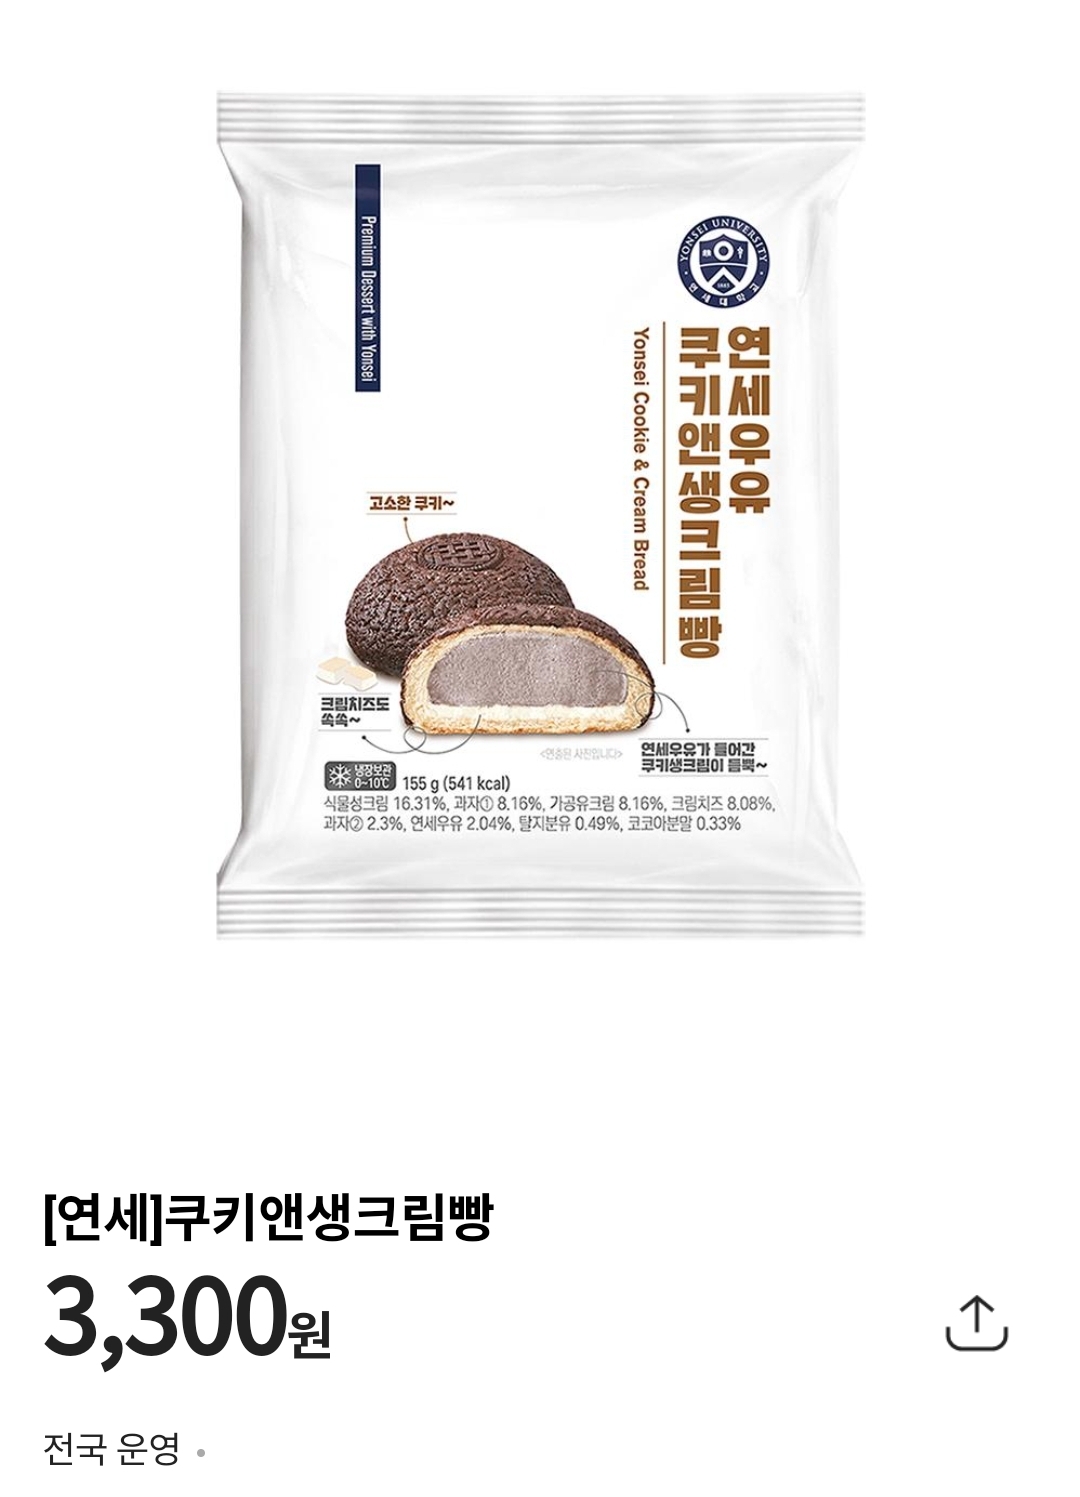 [정보/소식] 연세우유 쿠키앤생크림빵 출시 | 인스티즈